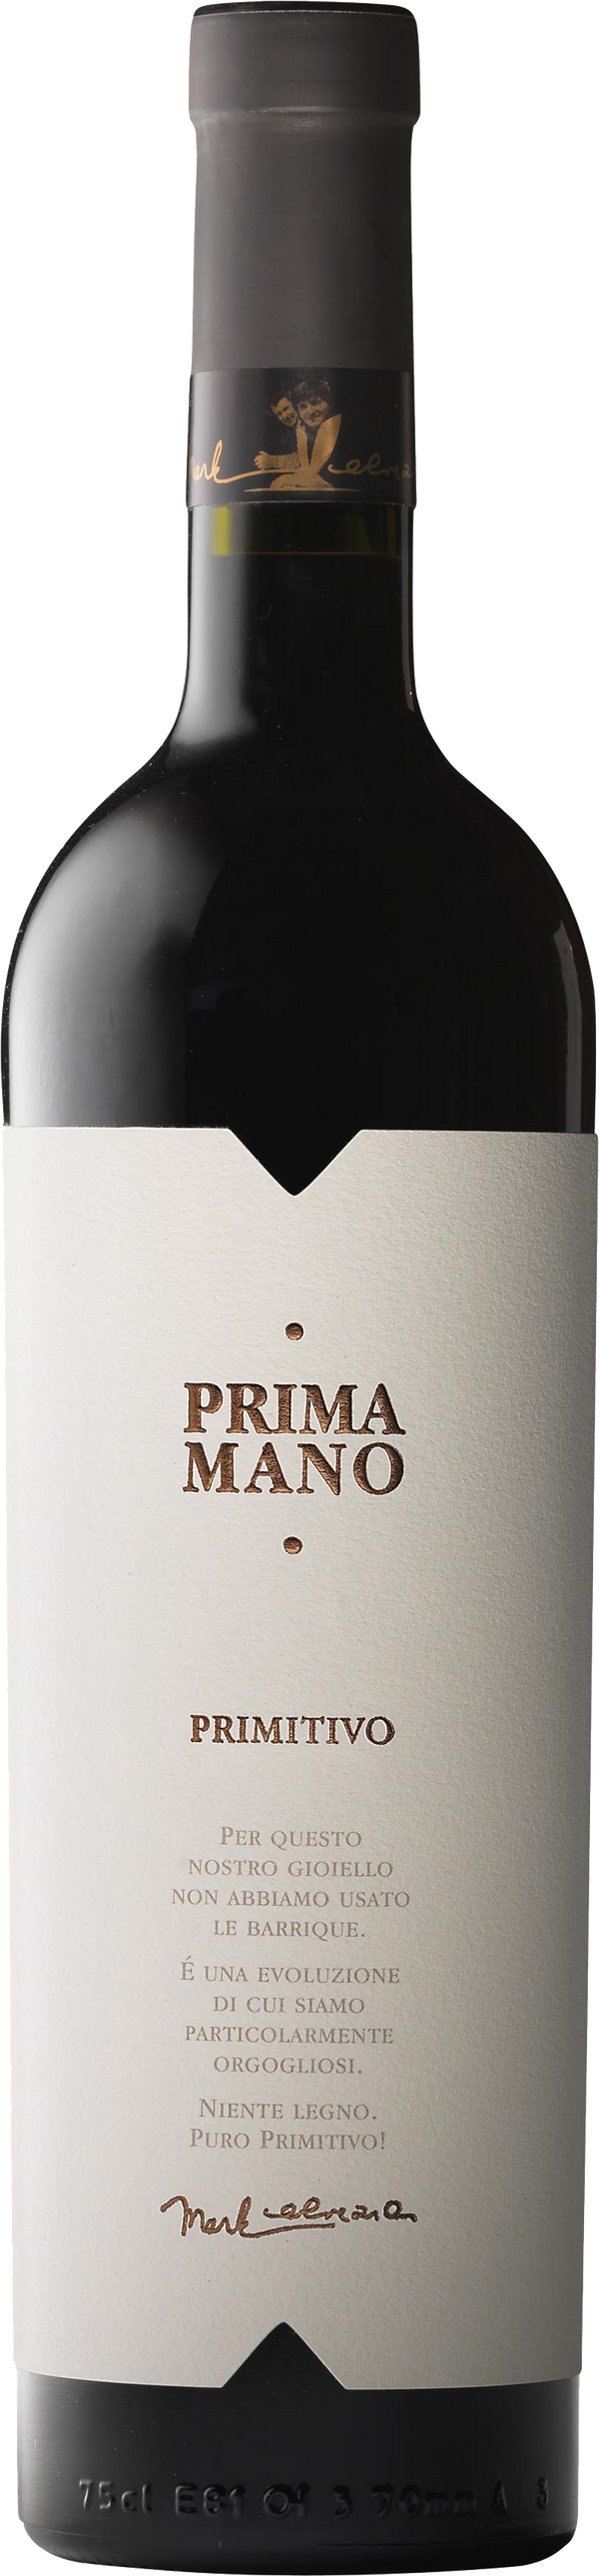 Primamano Primitivo Puglia IGT 2021 - A Mano Wine